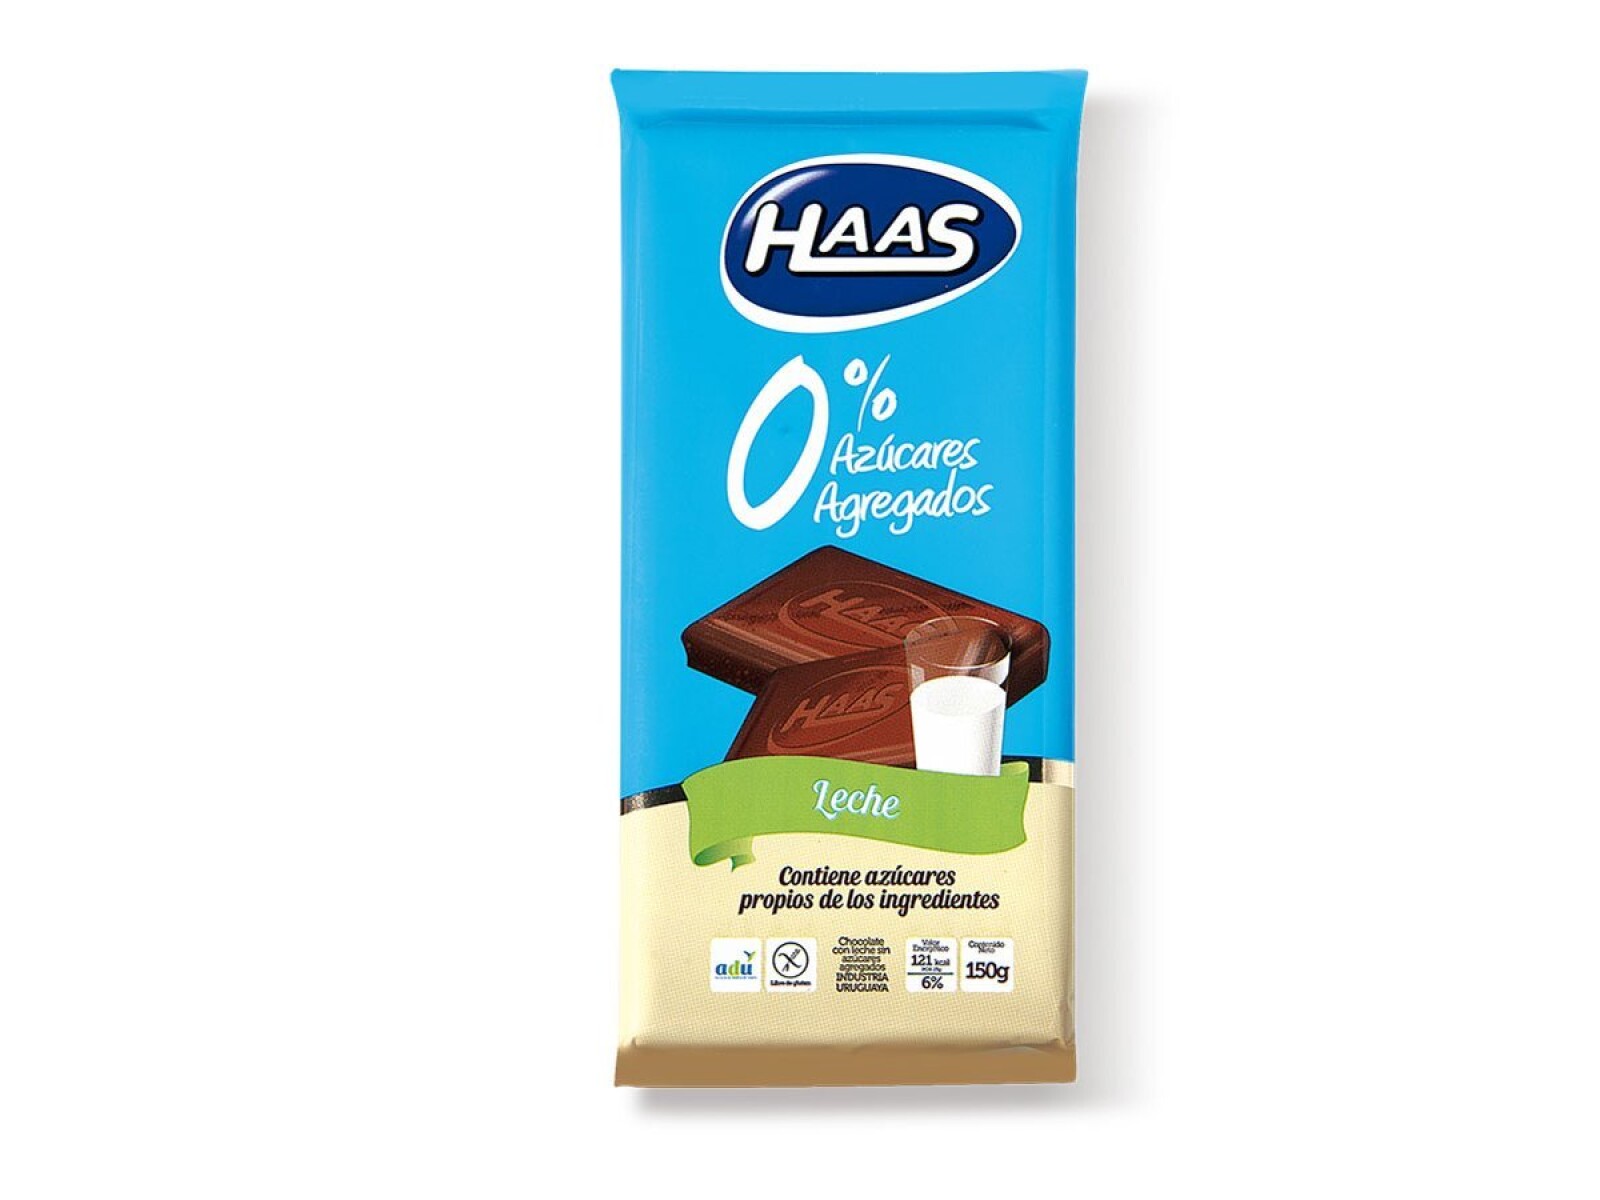 Chocolate Haas 0% Azúcar 70 Grs. 